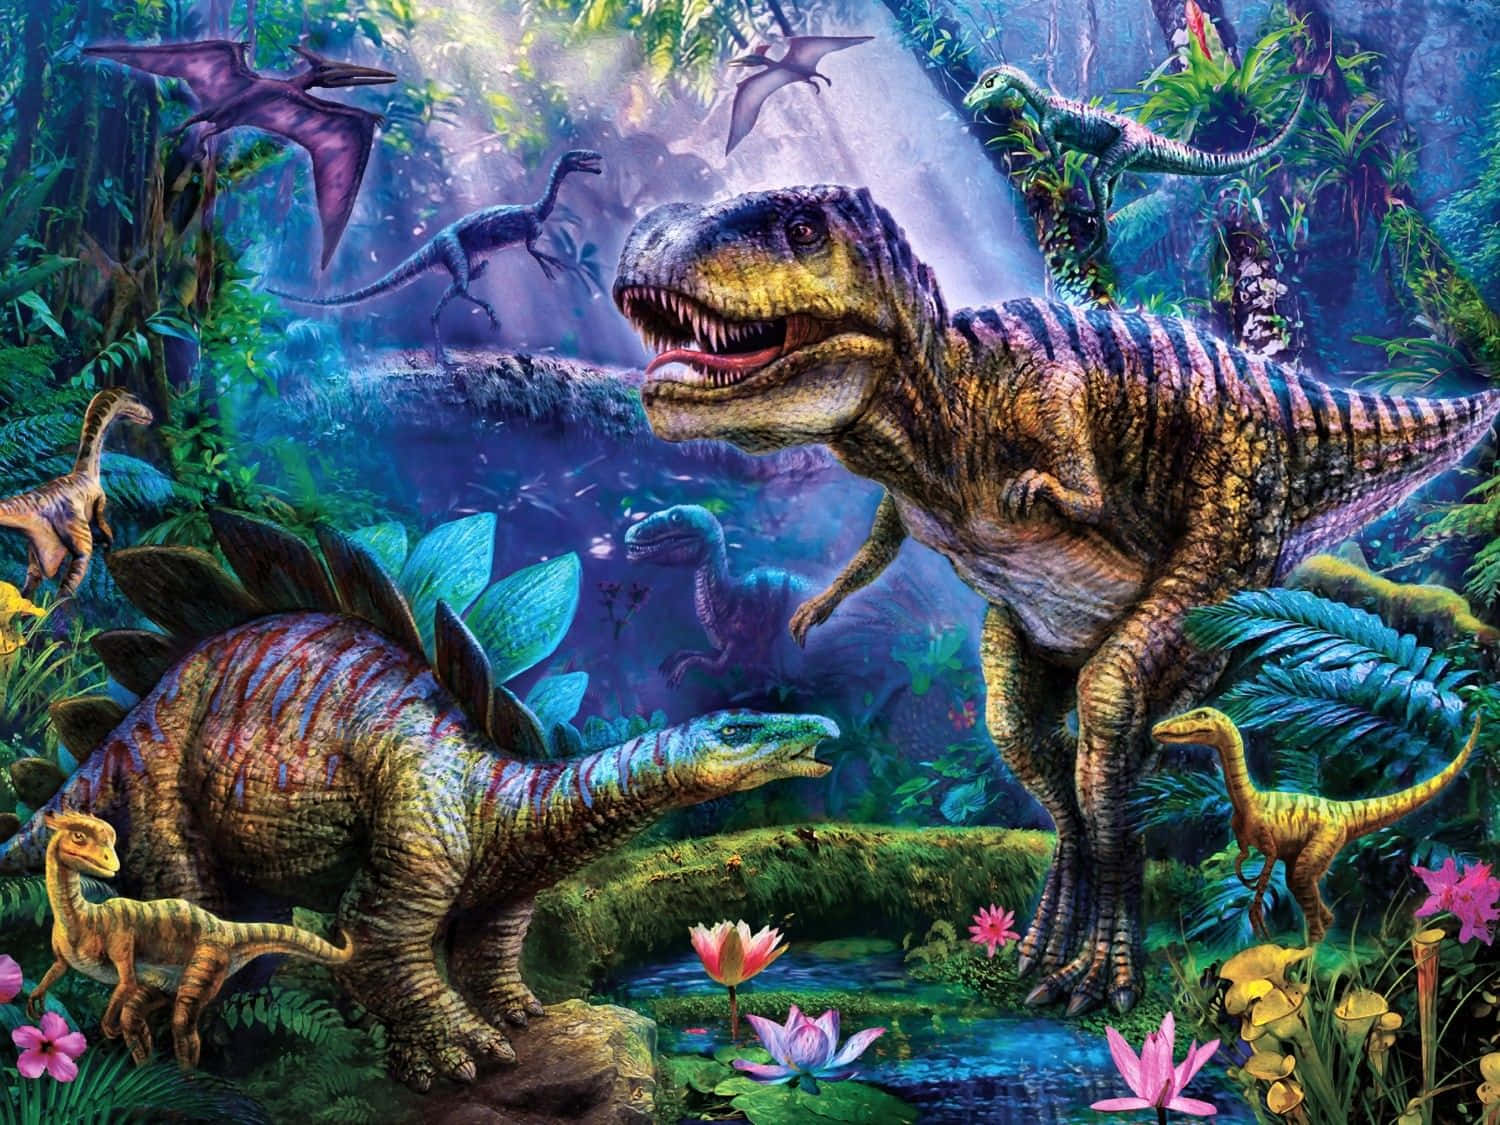 Enmäktig Brachiosaurus Står Högt Med En Fantastisk Bakgrund Av Berg Och Moln.